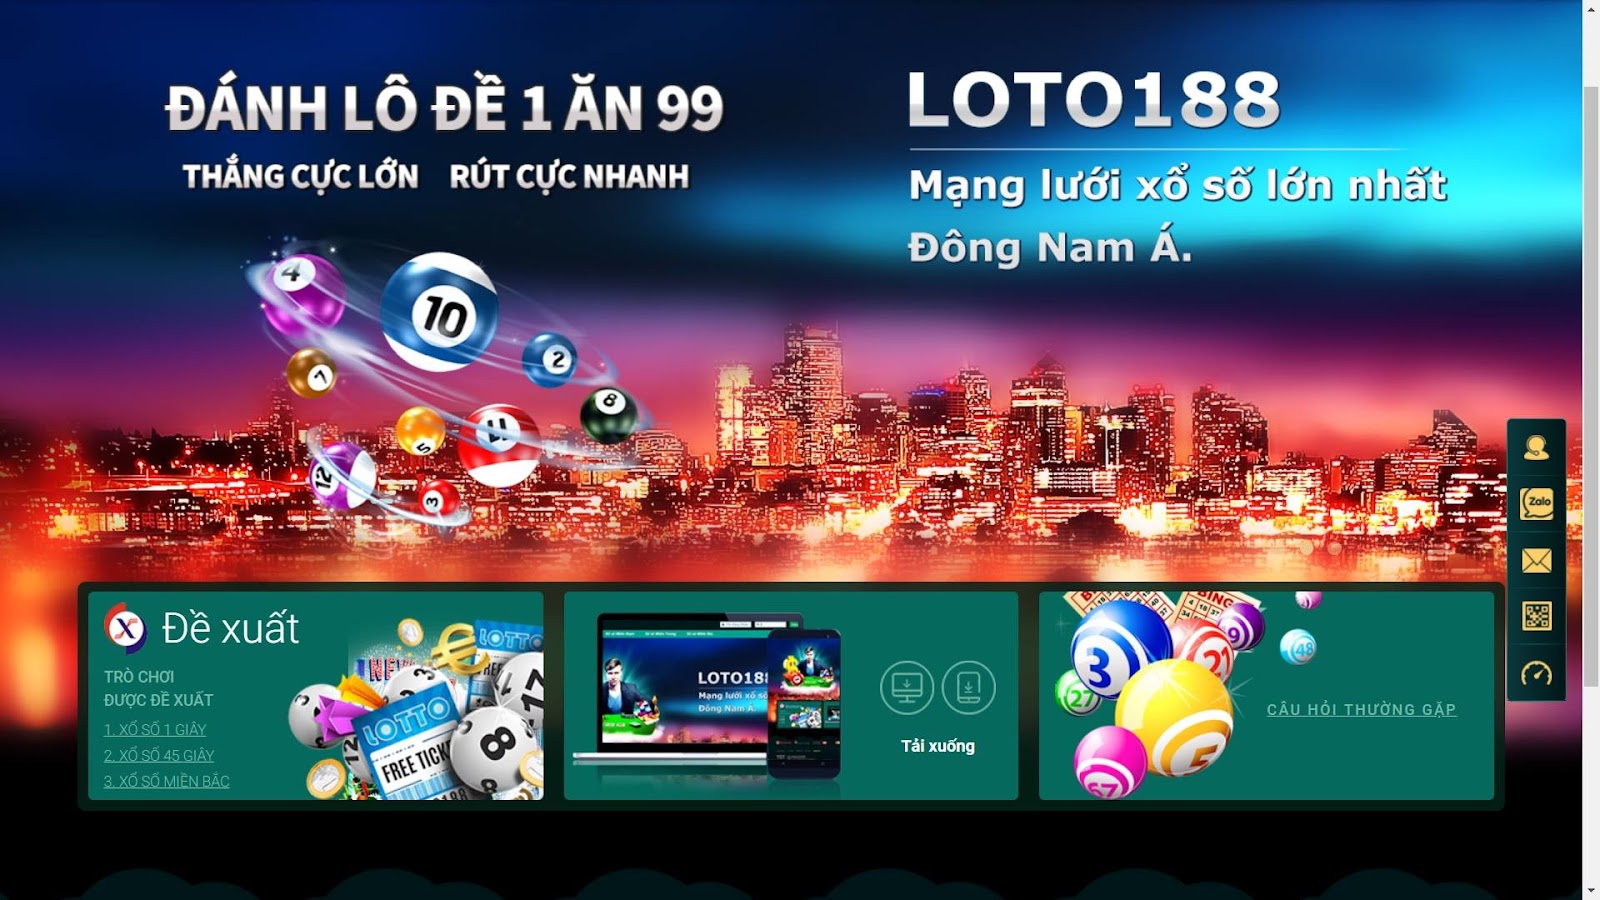 Đa dạng các trò chơi xổ số trực tuyến tại Loto188 với tỷ lệ thắng cược lên đến 1:99.